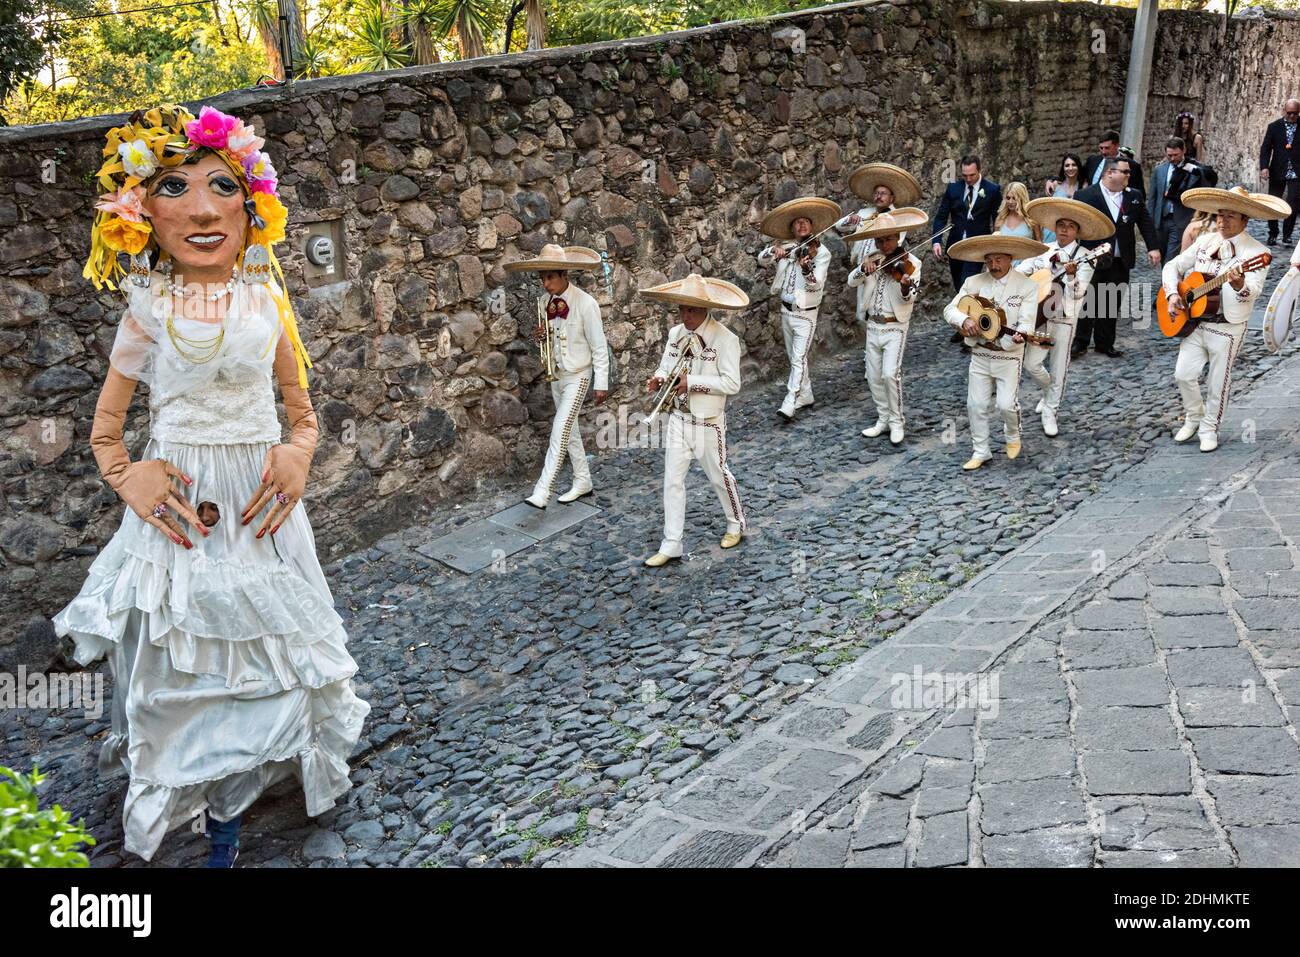 Eine traditionelle mexikanische Mariachi-Band spielt als riesige Puppen namens Mojigangas Tanz während einer Hochzeitsfeier Paraden durch die Straßen San Miguel de Allende, Guanajuato, Mexiko. Stockfoto